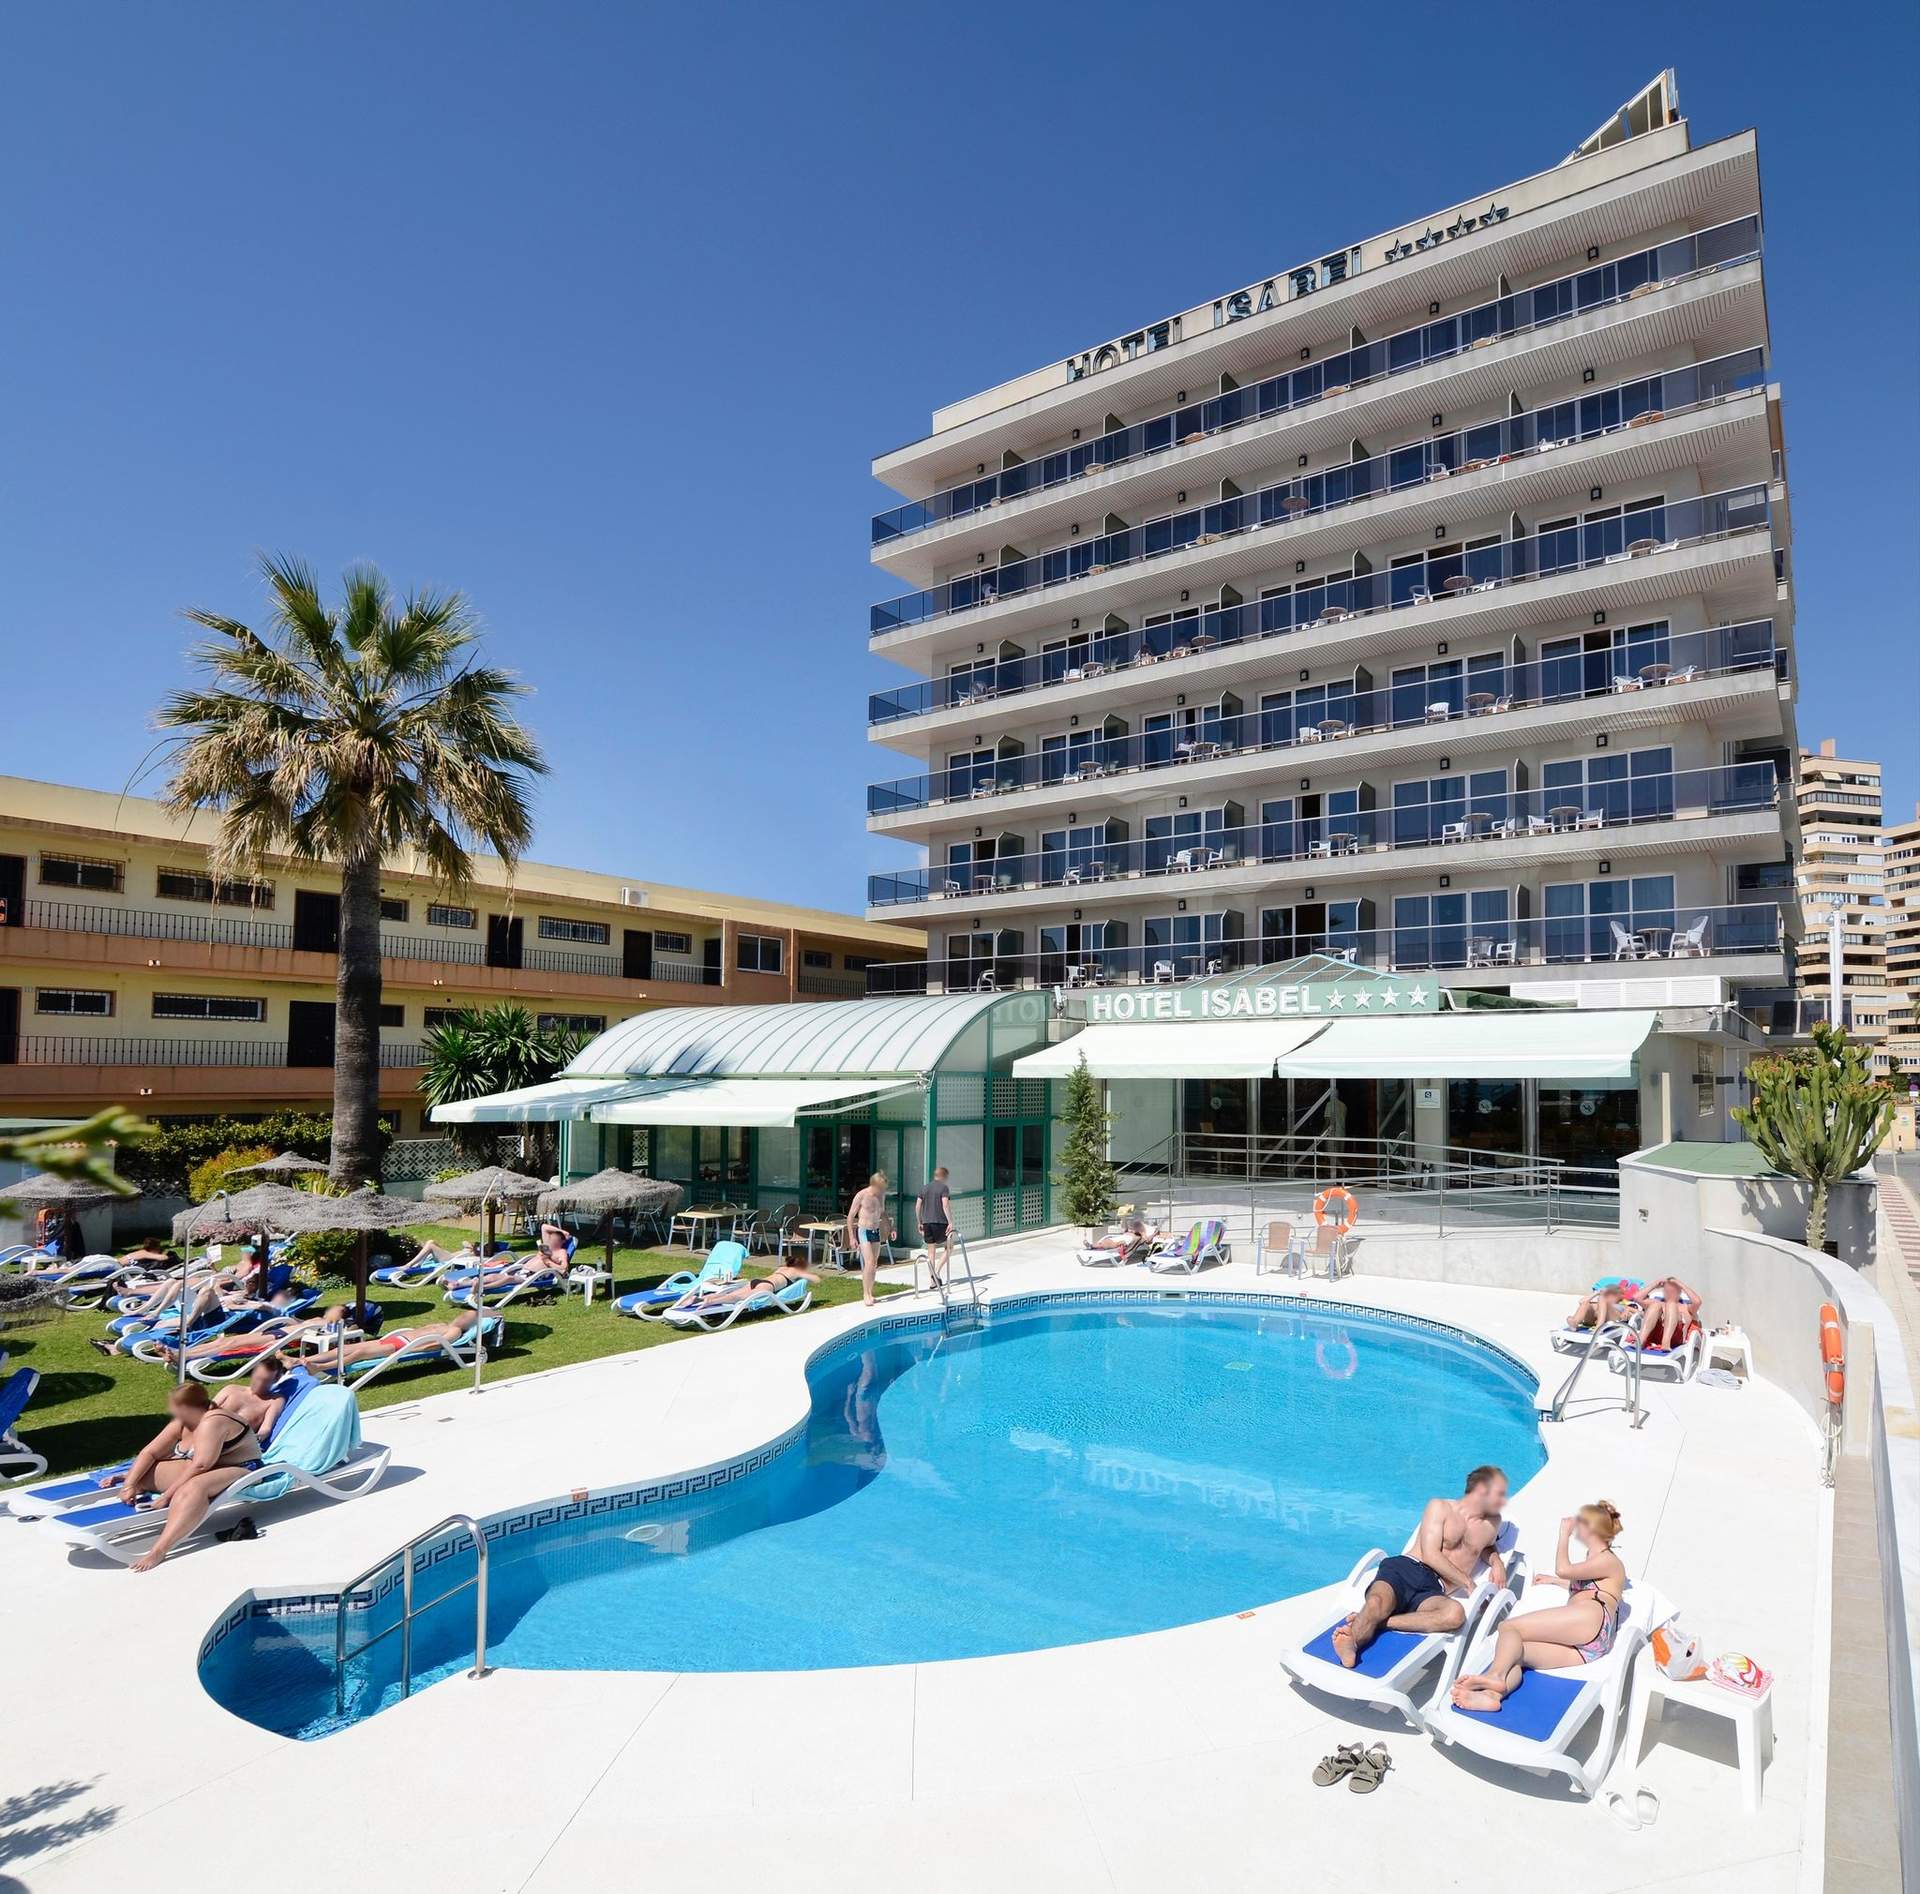 Los hoteles facturaron 110 euros de media por habitación en marzo un casi un 10% más que el año anterior